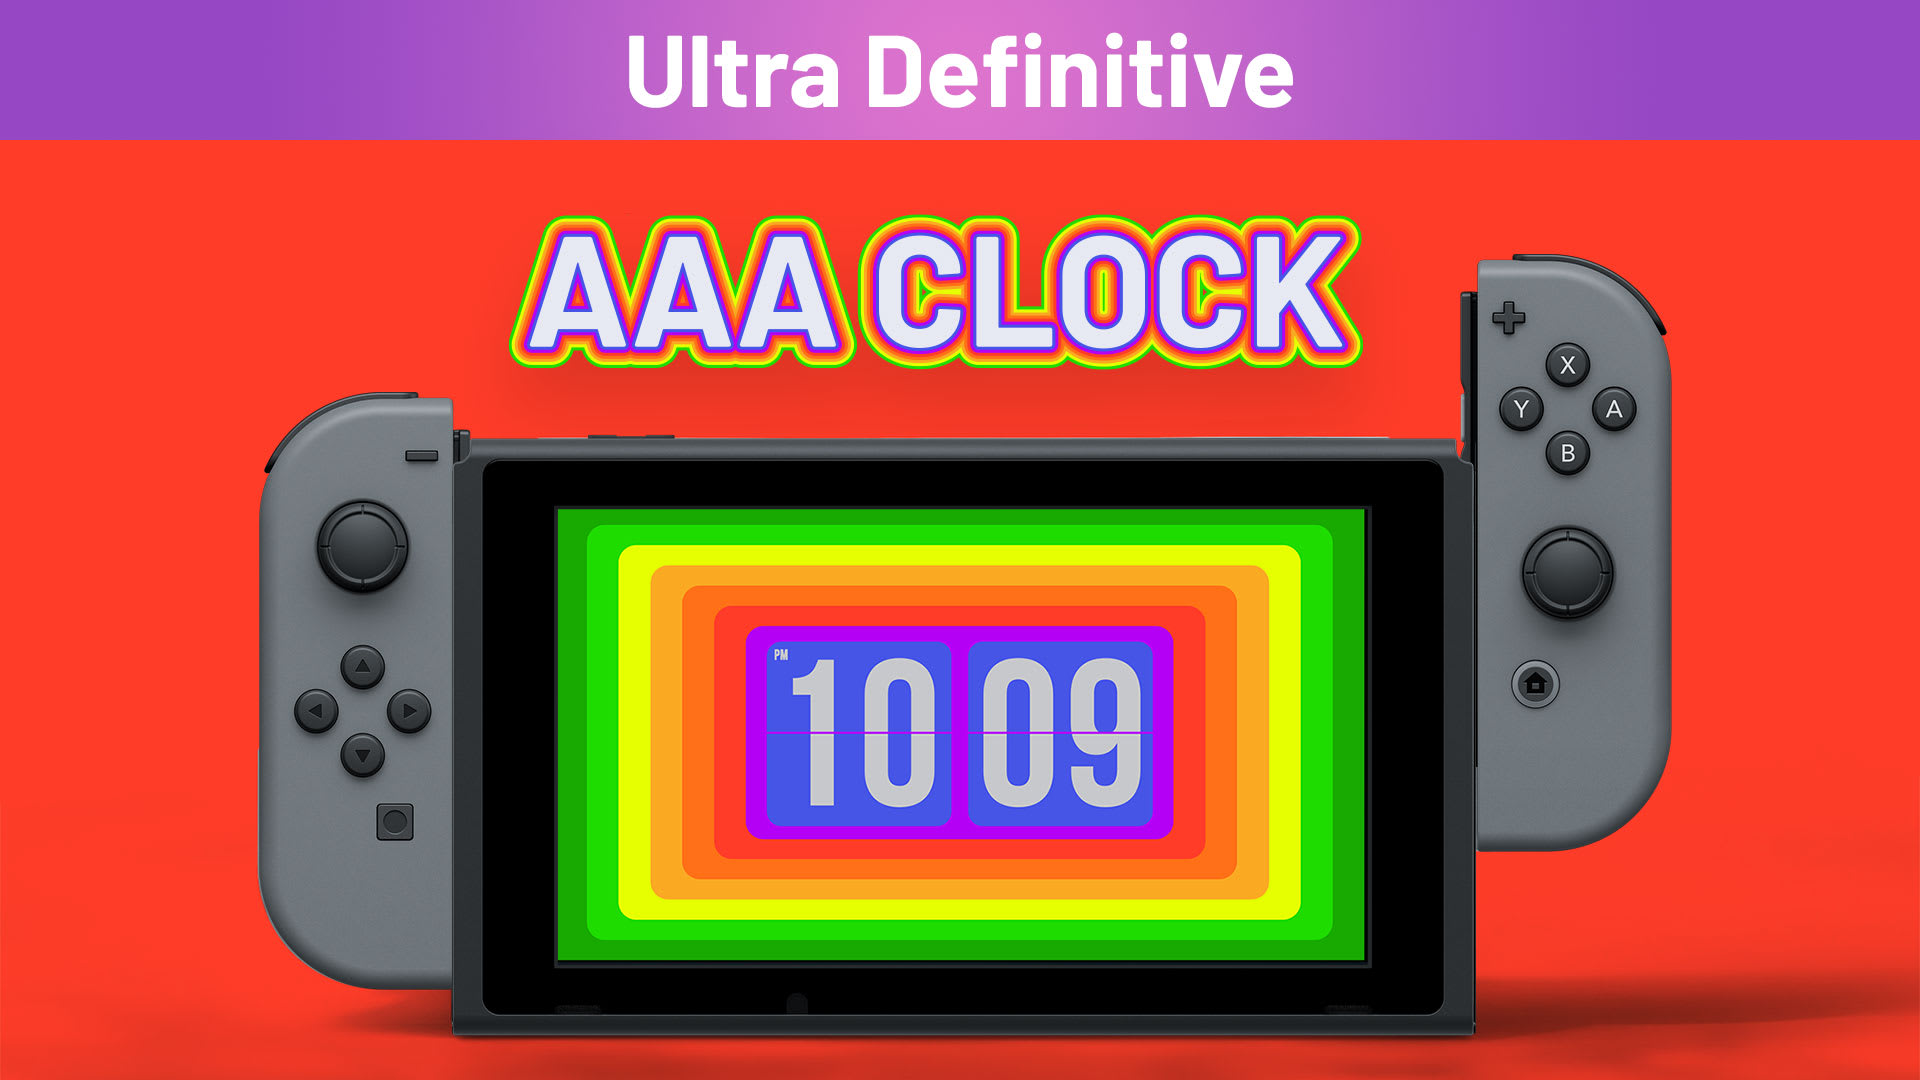 AAA Clock Ultra Definitive